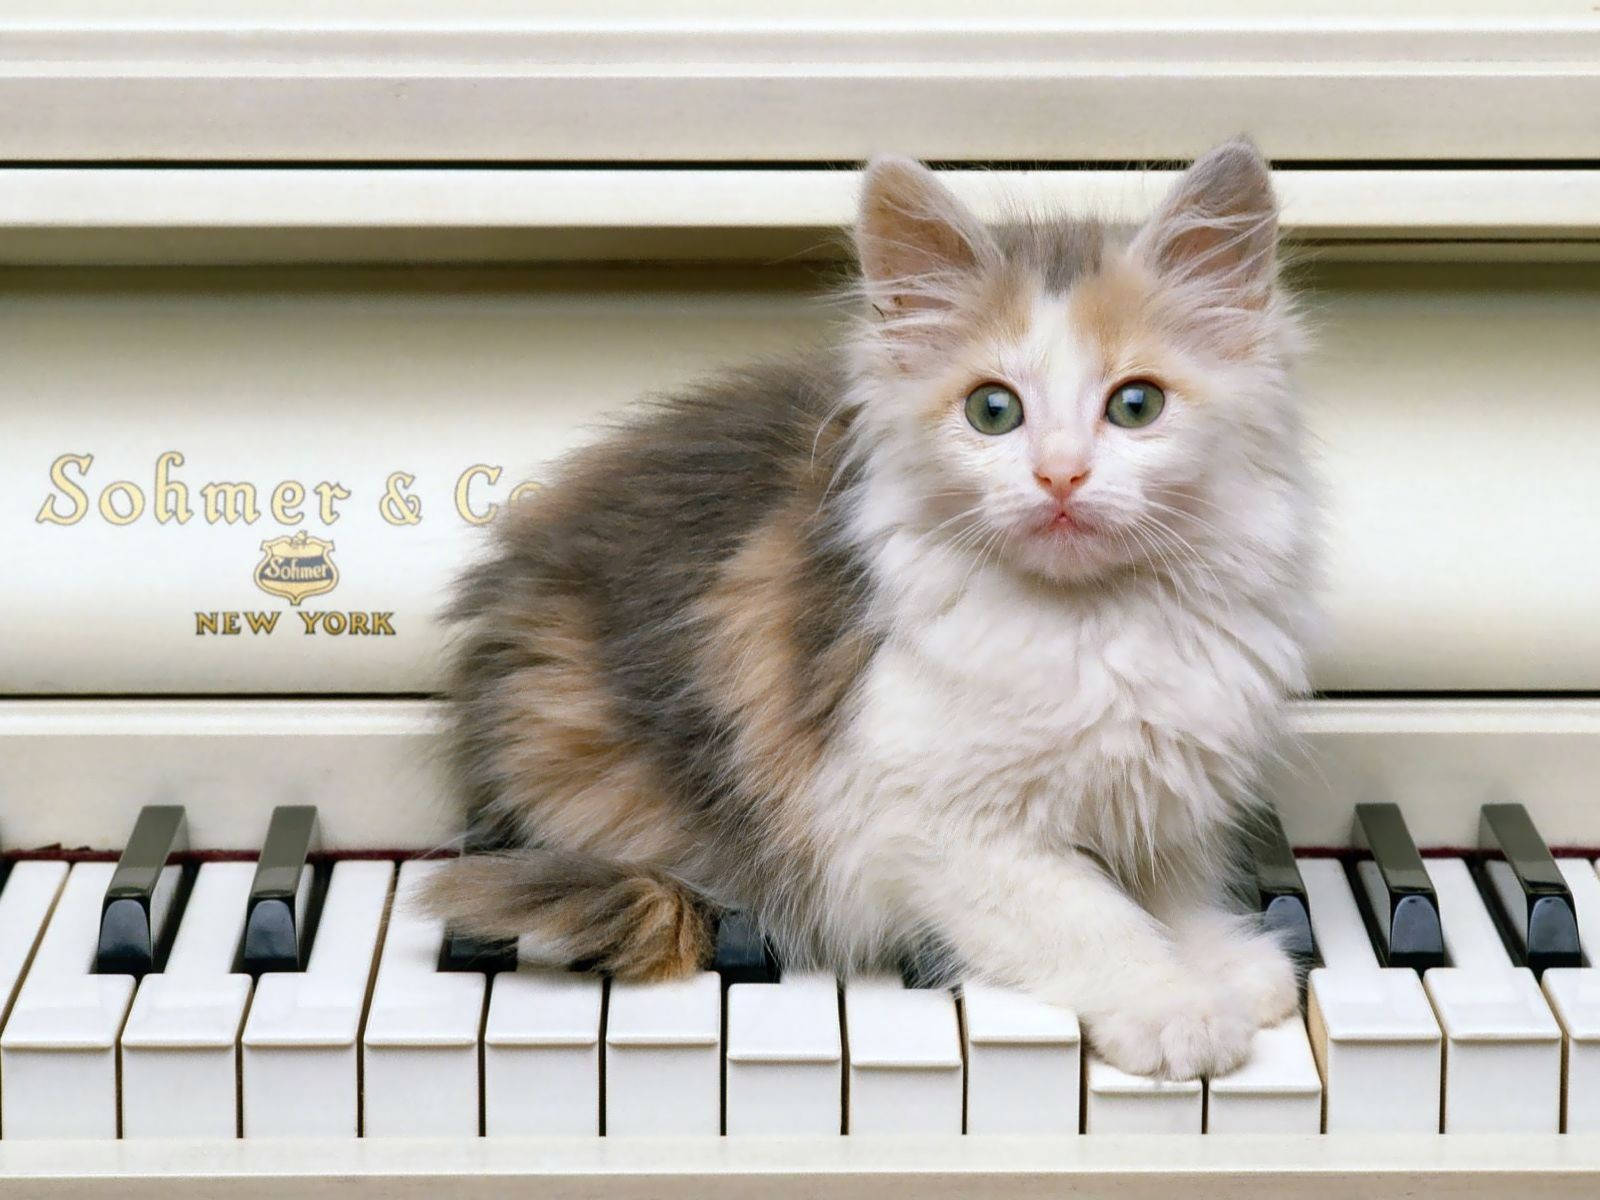 Cute Kitty On Piano Keys Wallpaper